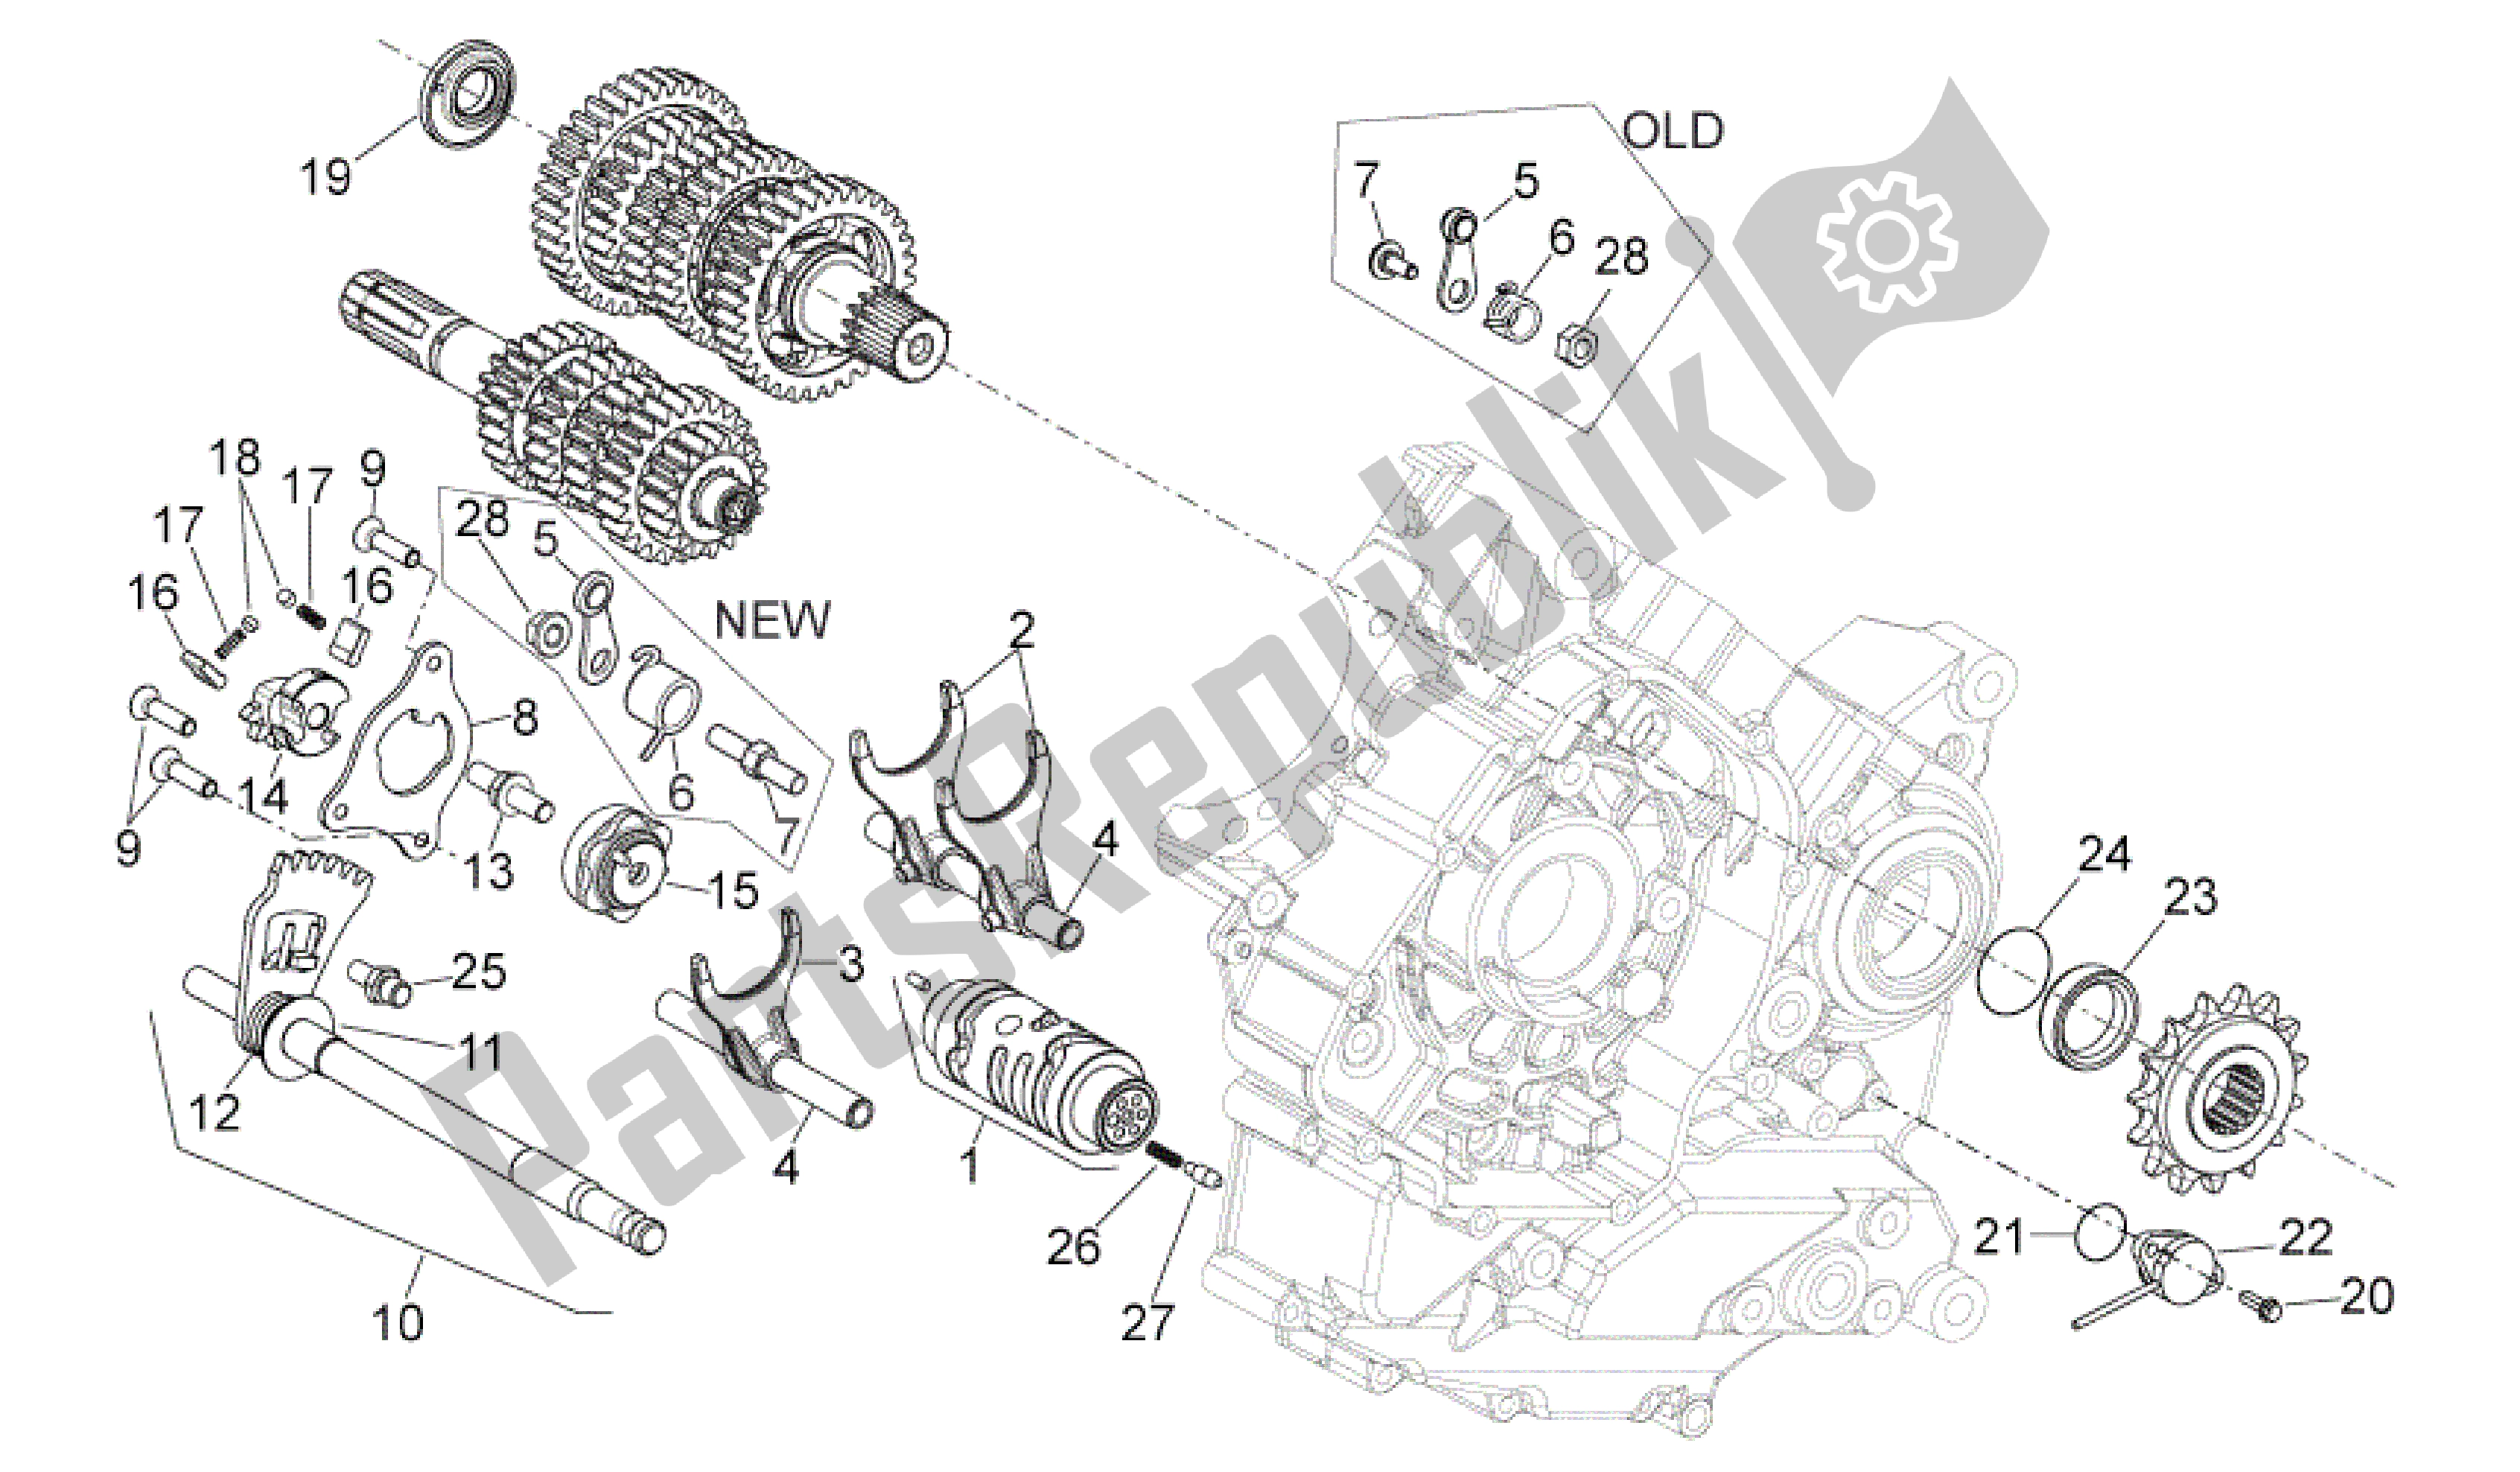 All parts for the Gear Box Selector of the Aprilia Dorsoduro 750 2008 - 2011